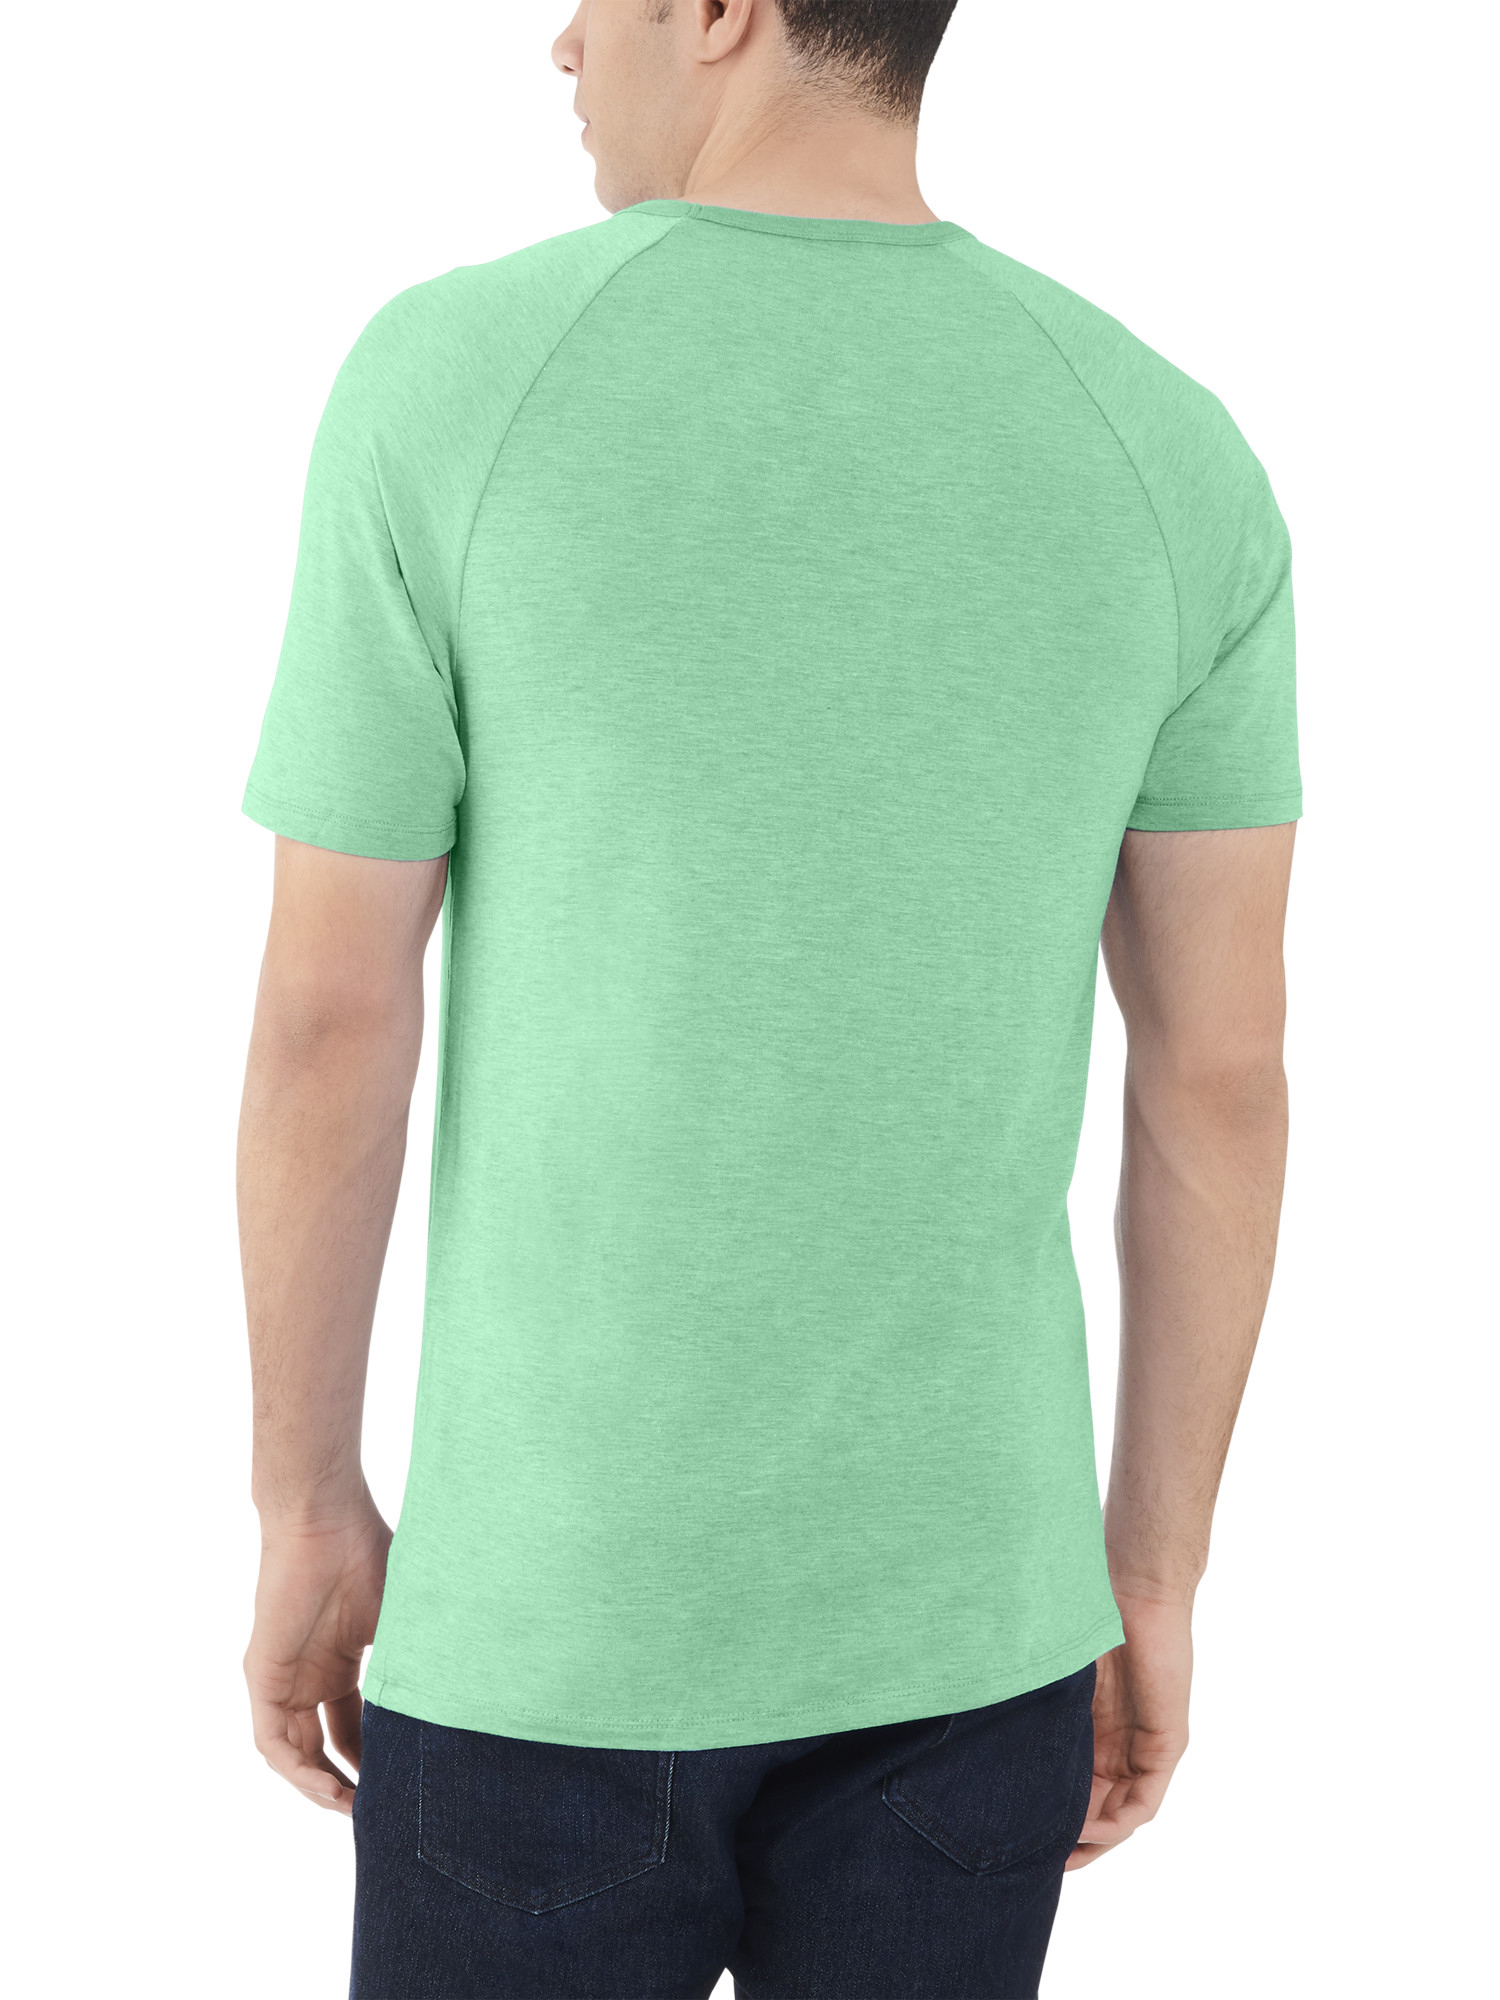 Fruit of the Loom Men's Everlight Short Sleeve Raglan T-Shirt - 2 Pack - image 3 of 6